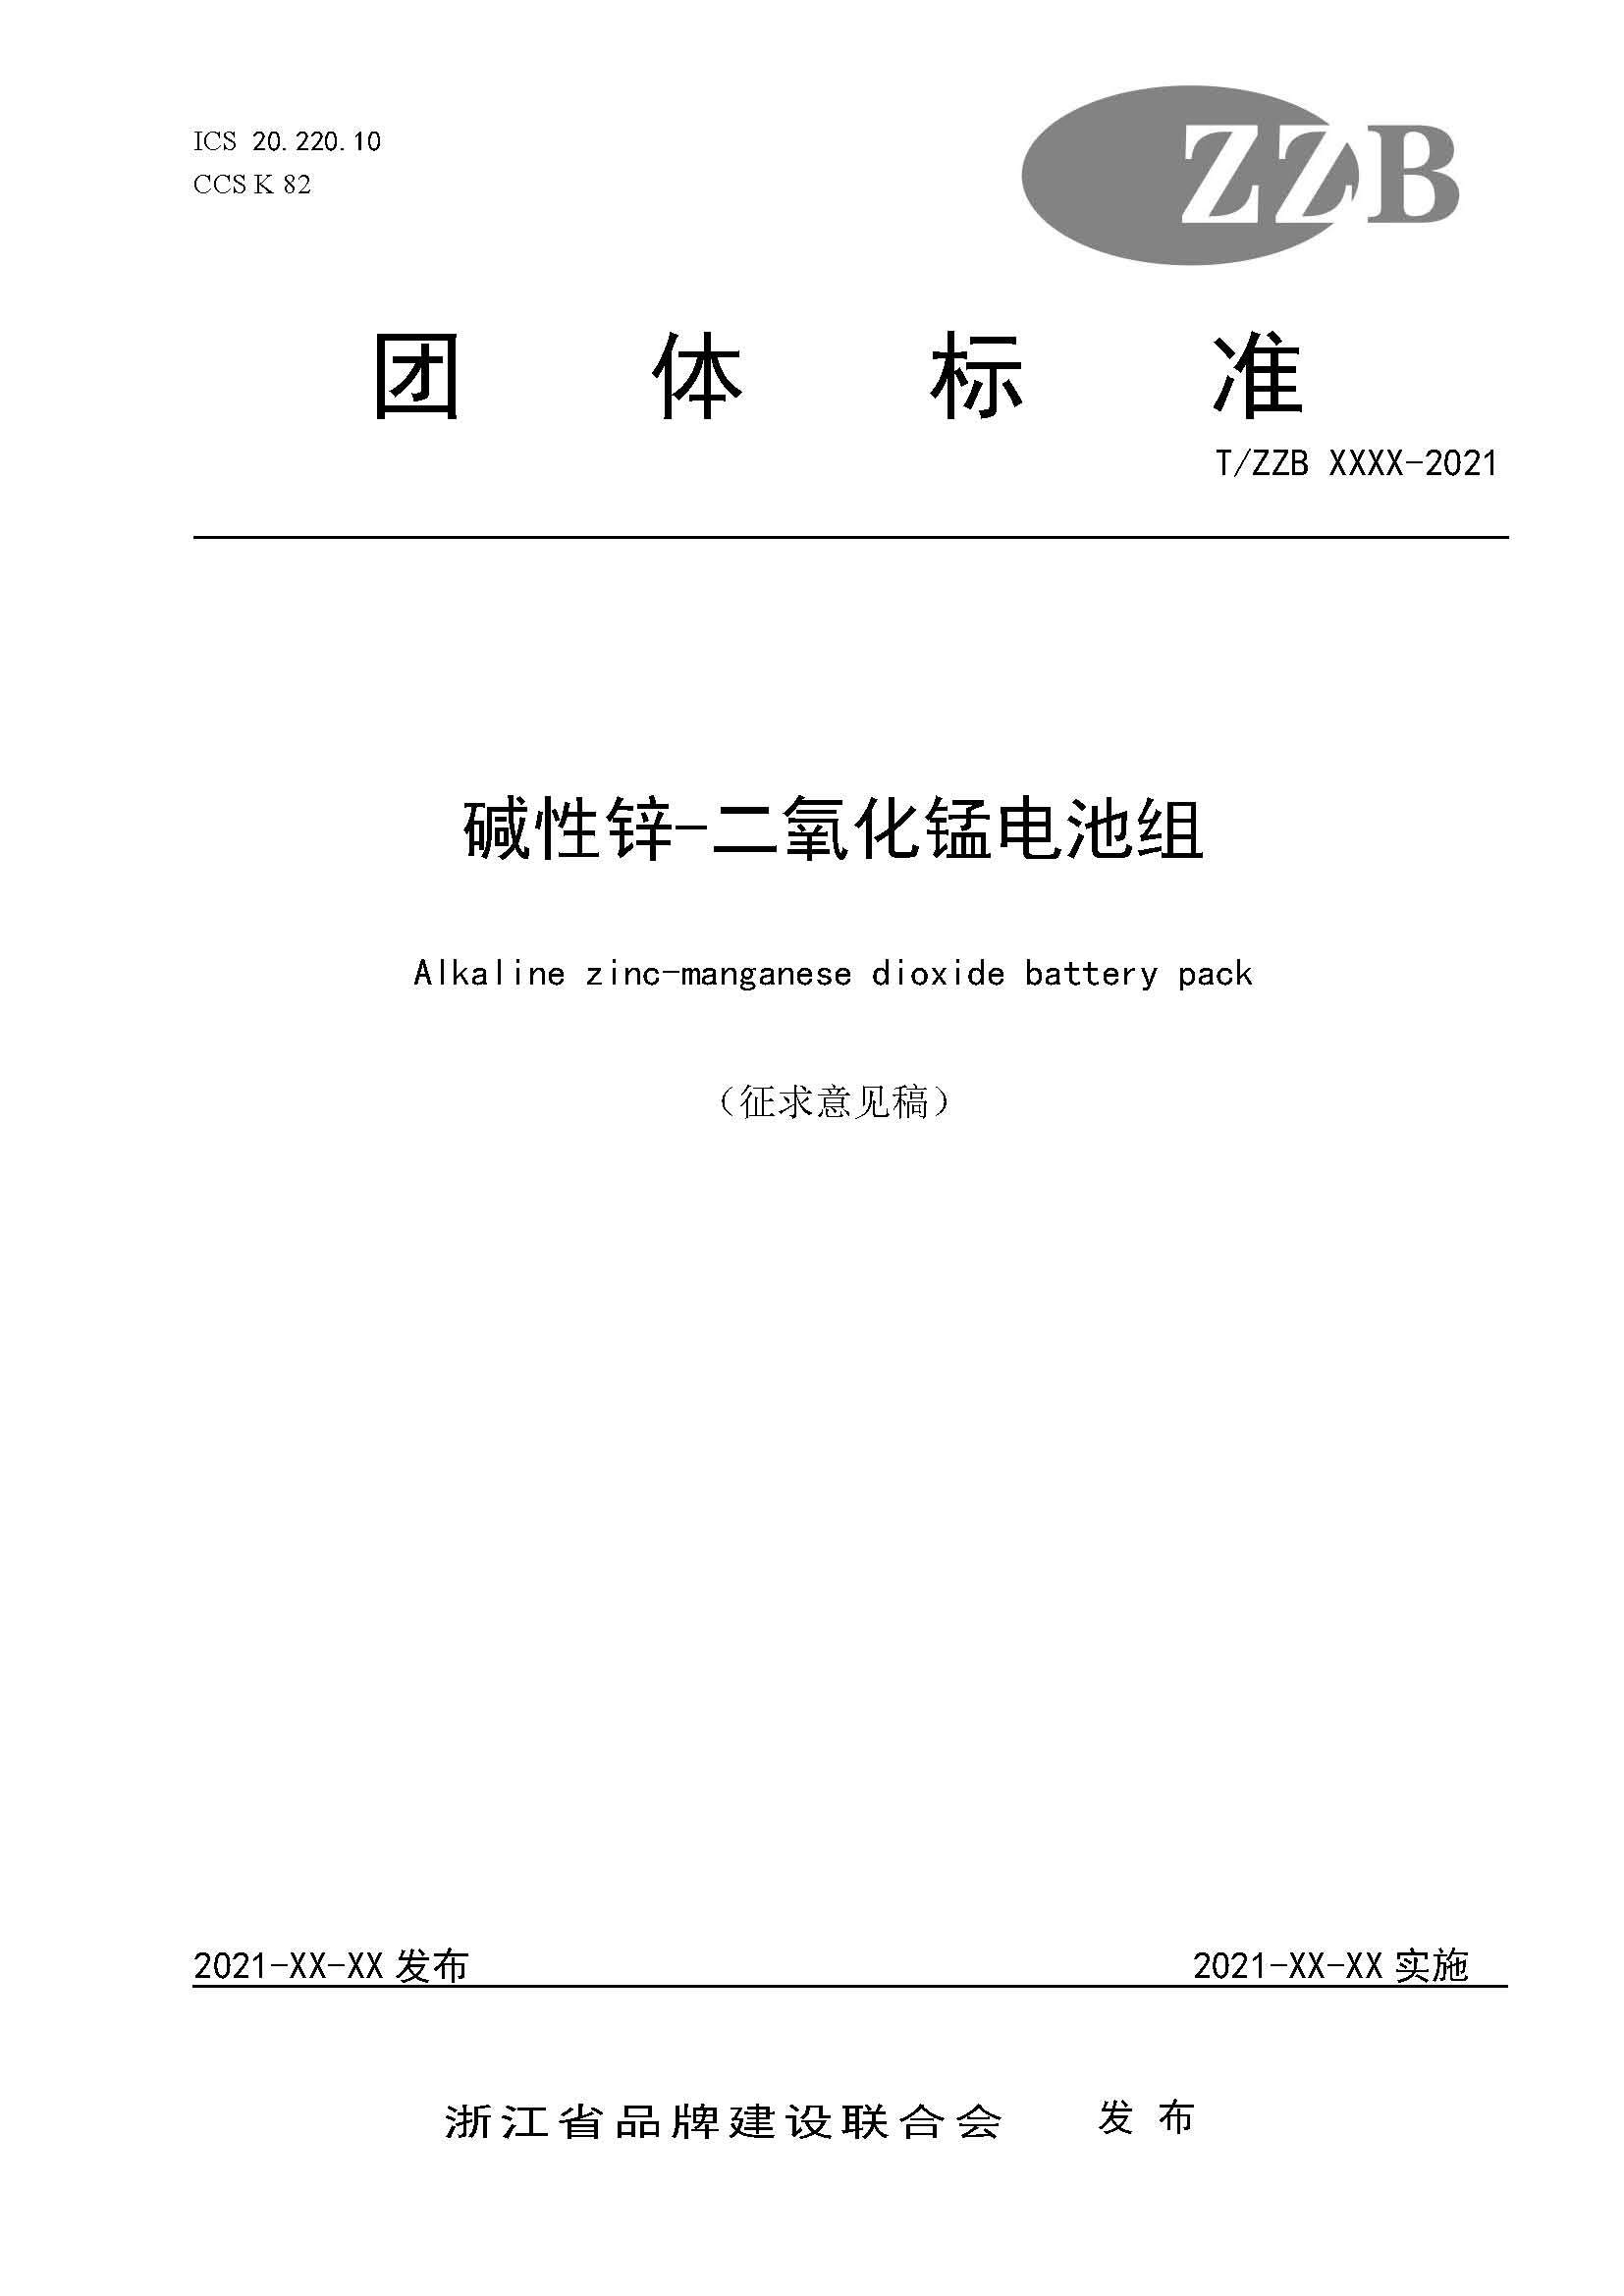 關於徵求《鹼性鋅錳電池組》“浙江製造”標準《徵求意見稿》意見的公告